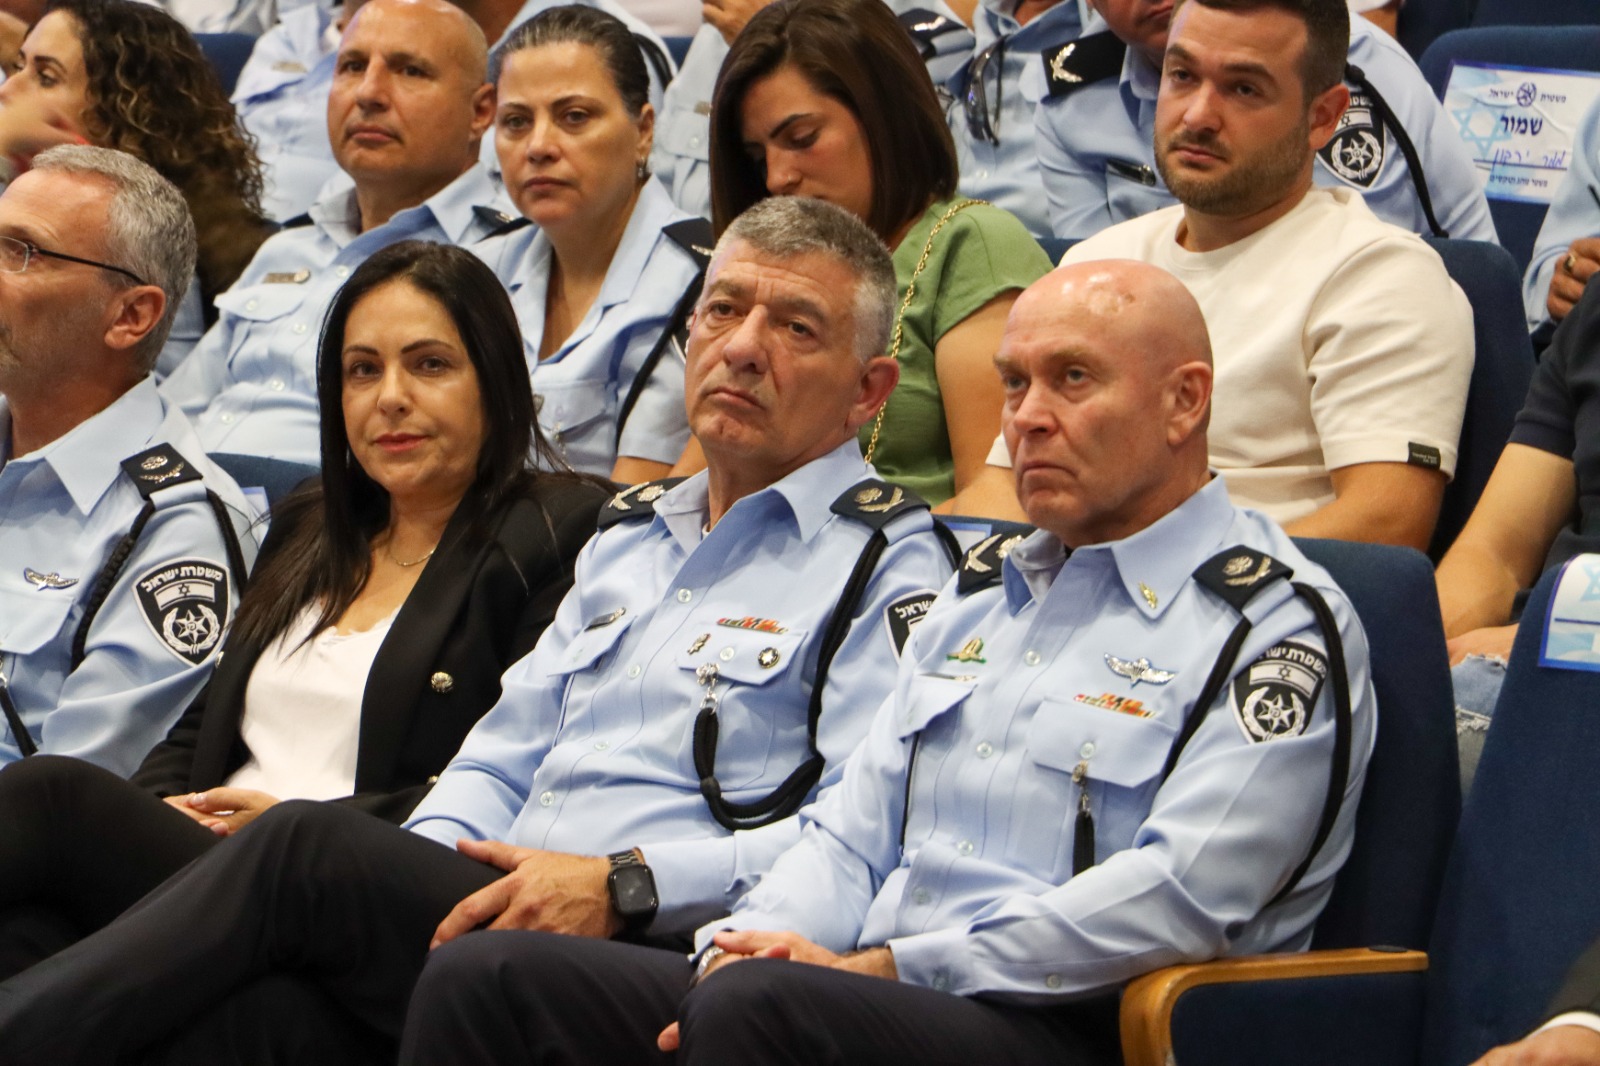   تعيين قائد جديد للشرطة في لواء تل ابيب 